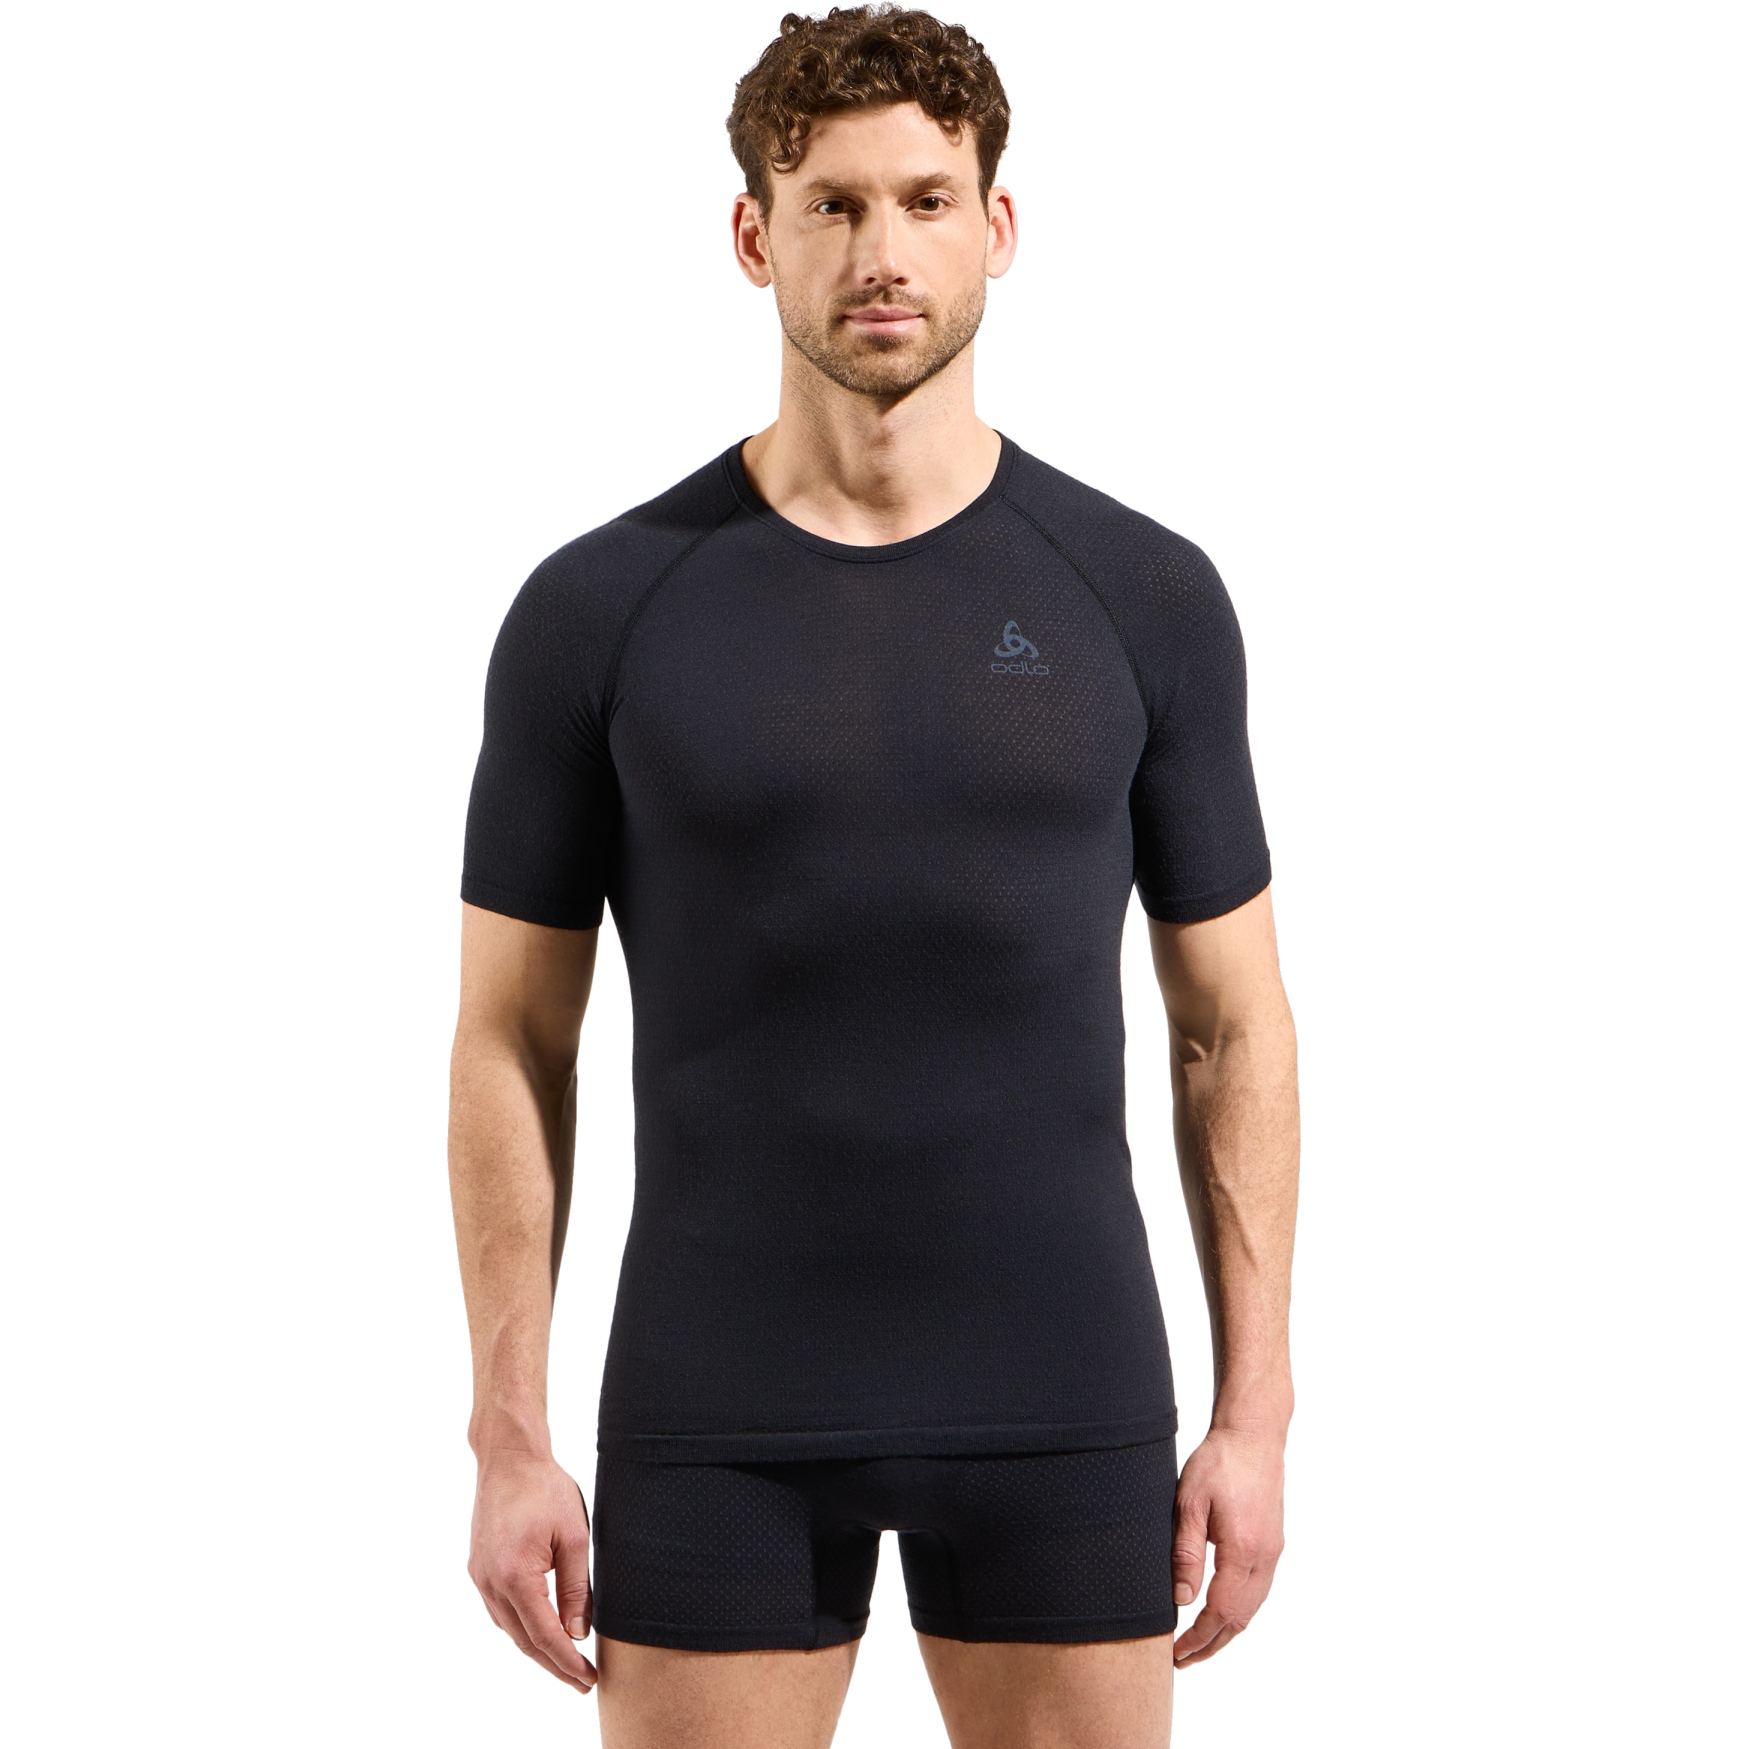 Produktbild von Odlo Performance Wool 140 Seamless Kurzarm-Unterhemd Herren - schwarz